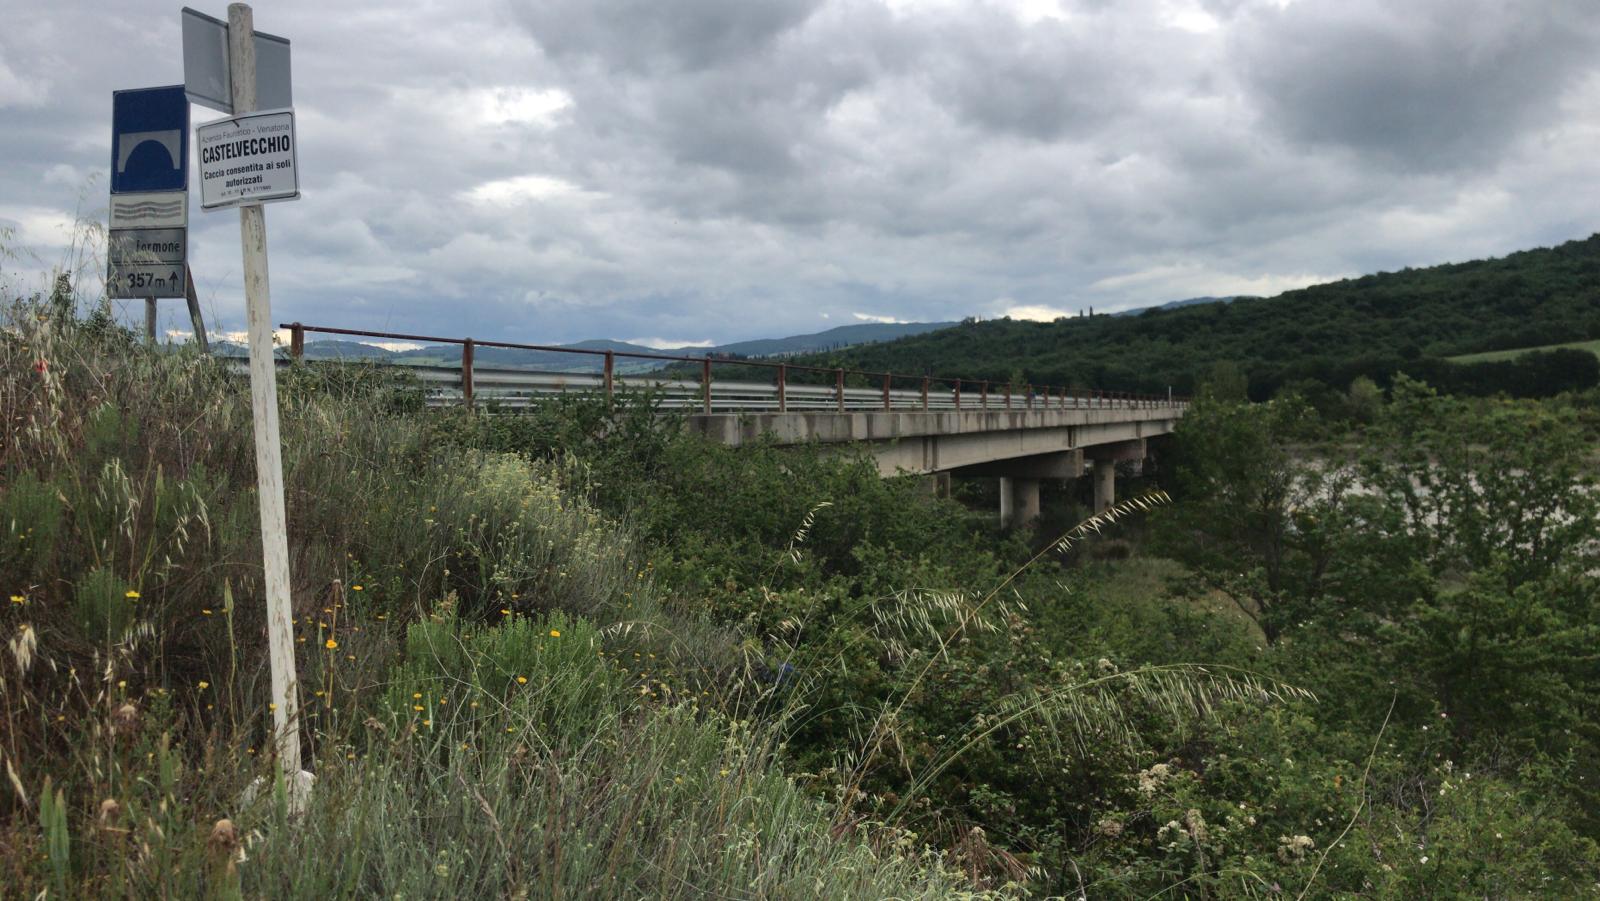 Verifiche su sicurezza ponte sul Formone, chiusa la strada traversa Amiata-Chianciano